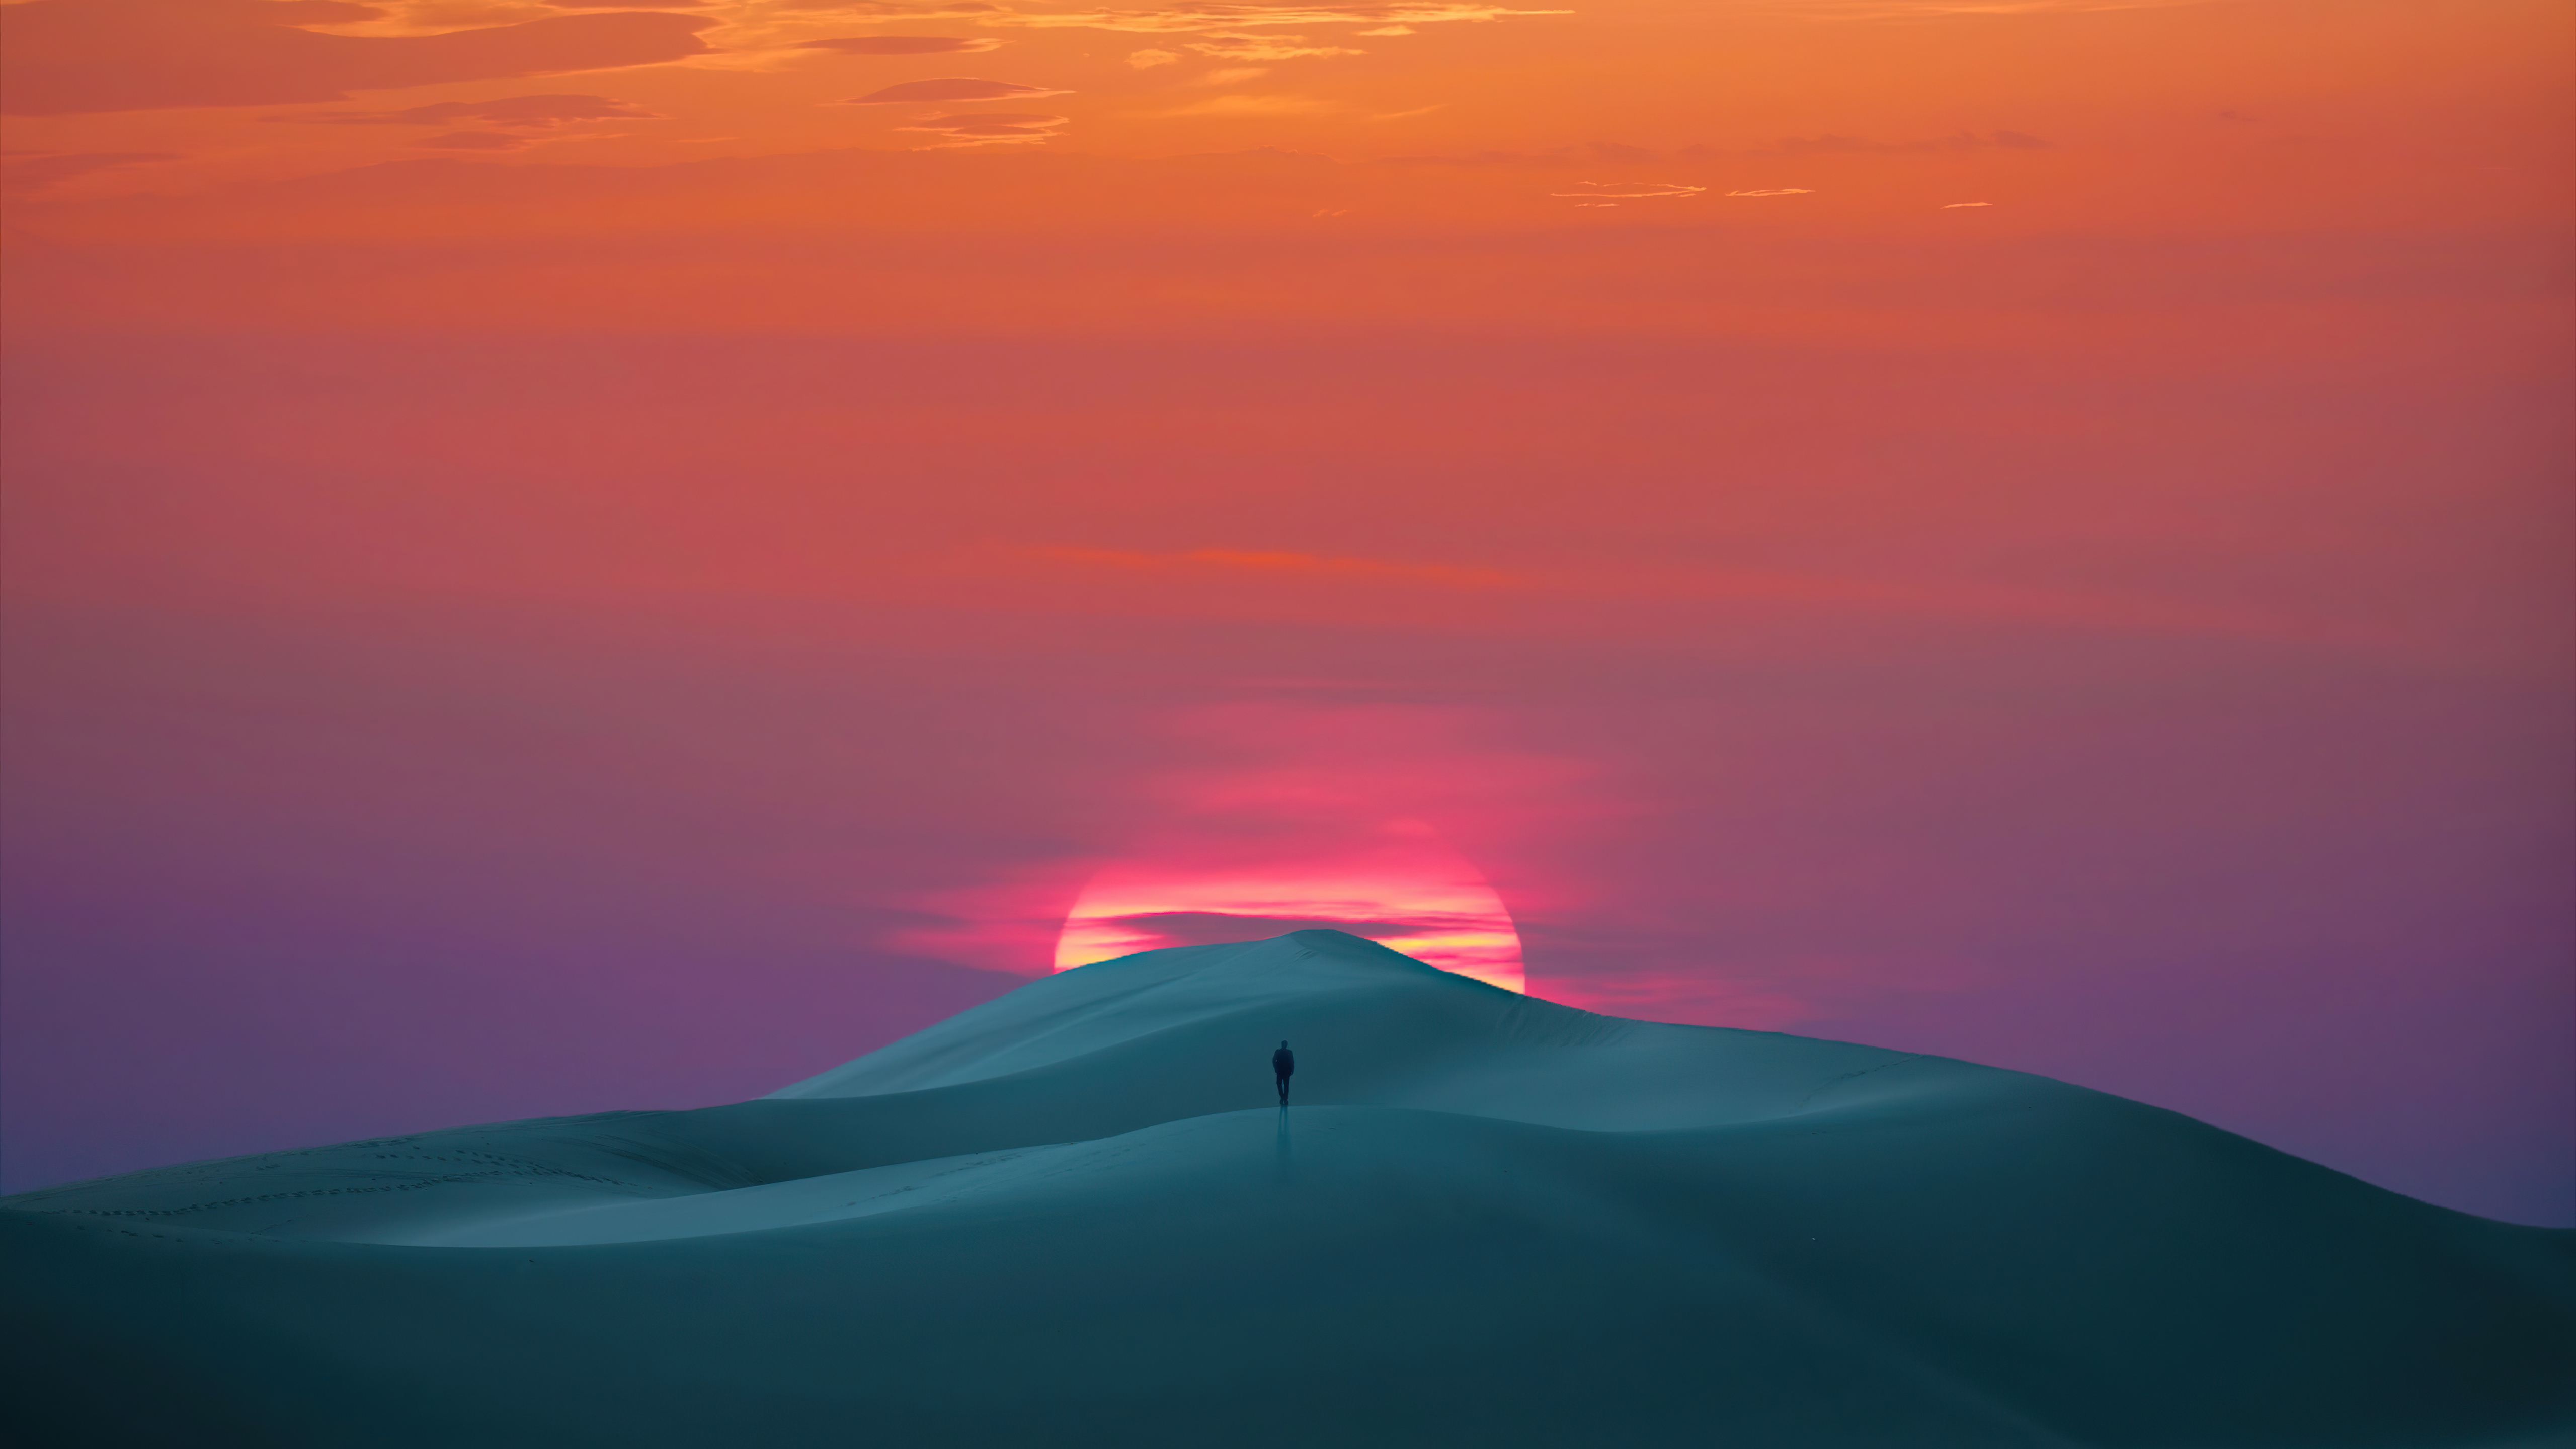 Desert sunset wallpaper Vectors  Illustrations for Free Download  Freepik